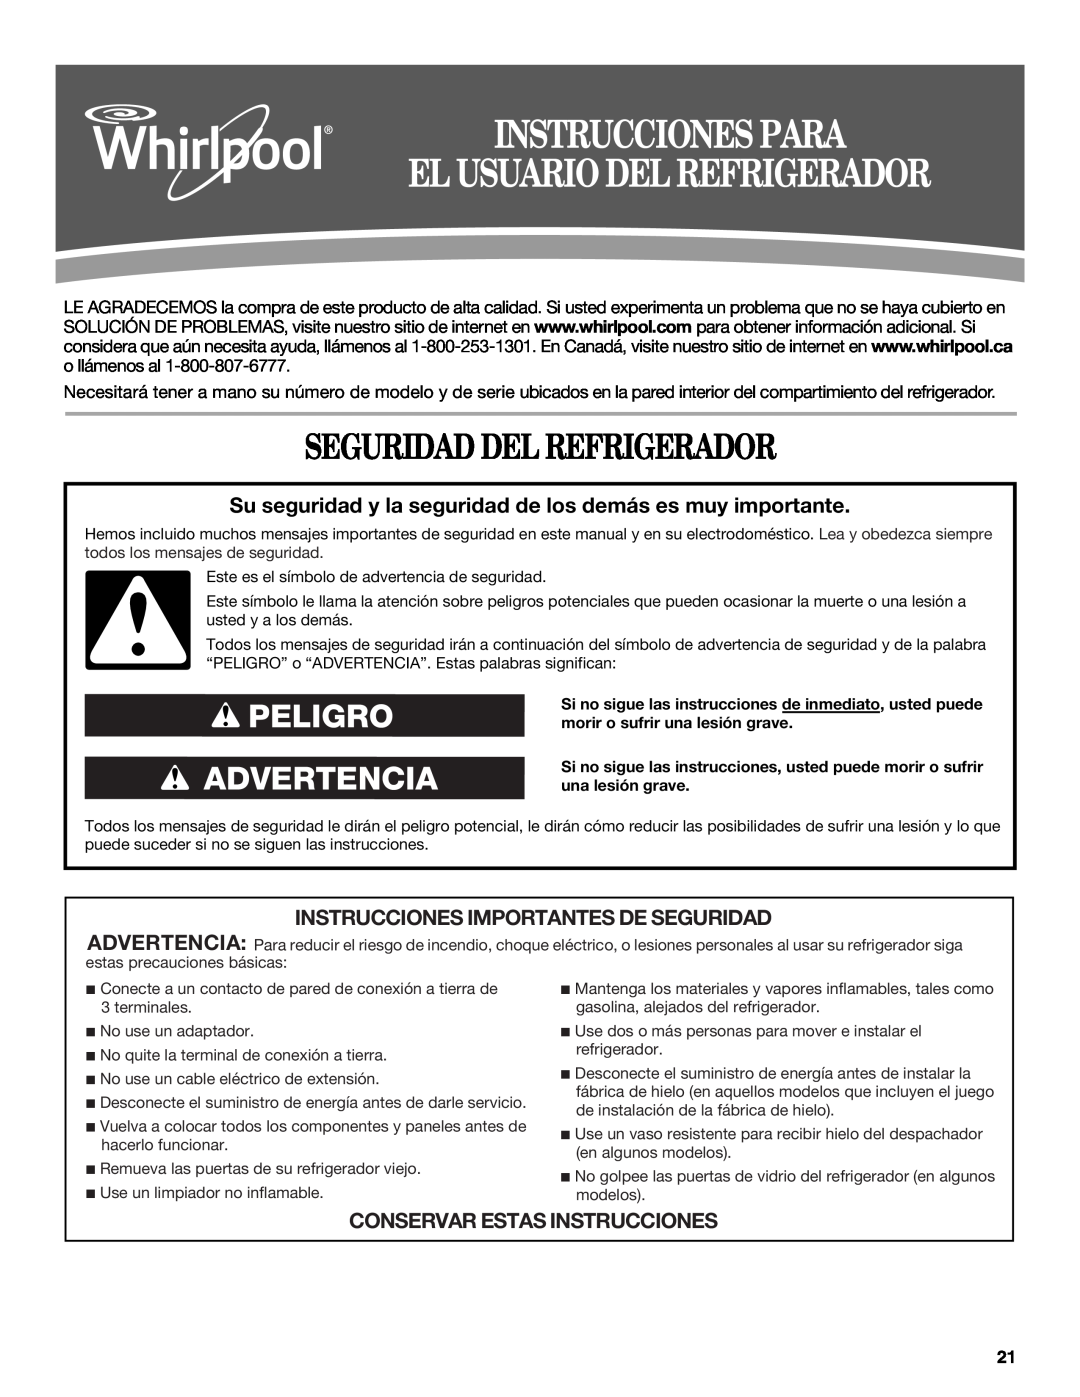 Whirlpool WSF26C2EXW Instrucciones Para El Usuario Del Refrigerador, Seguridad Del Refrigerador, Peligro Advertencia 